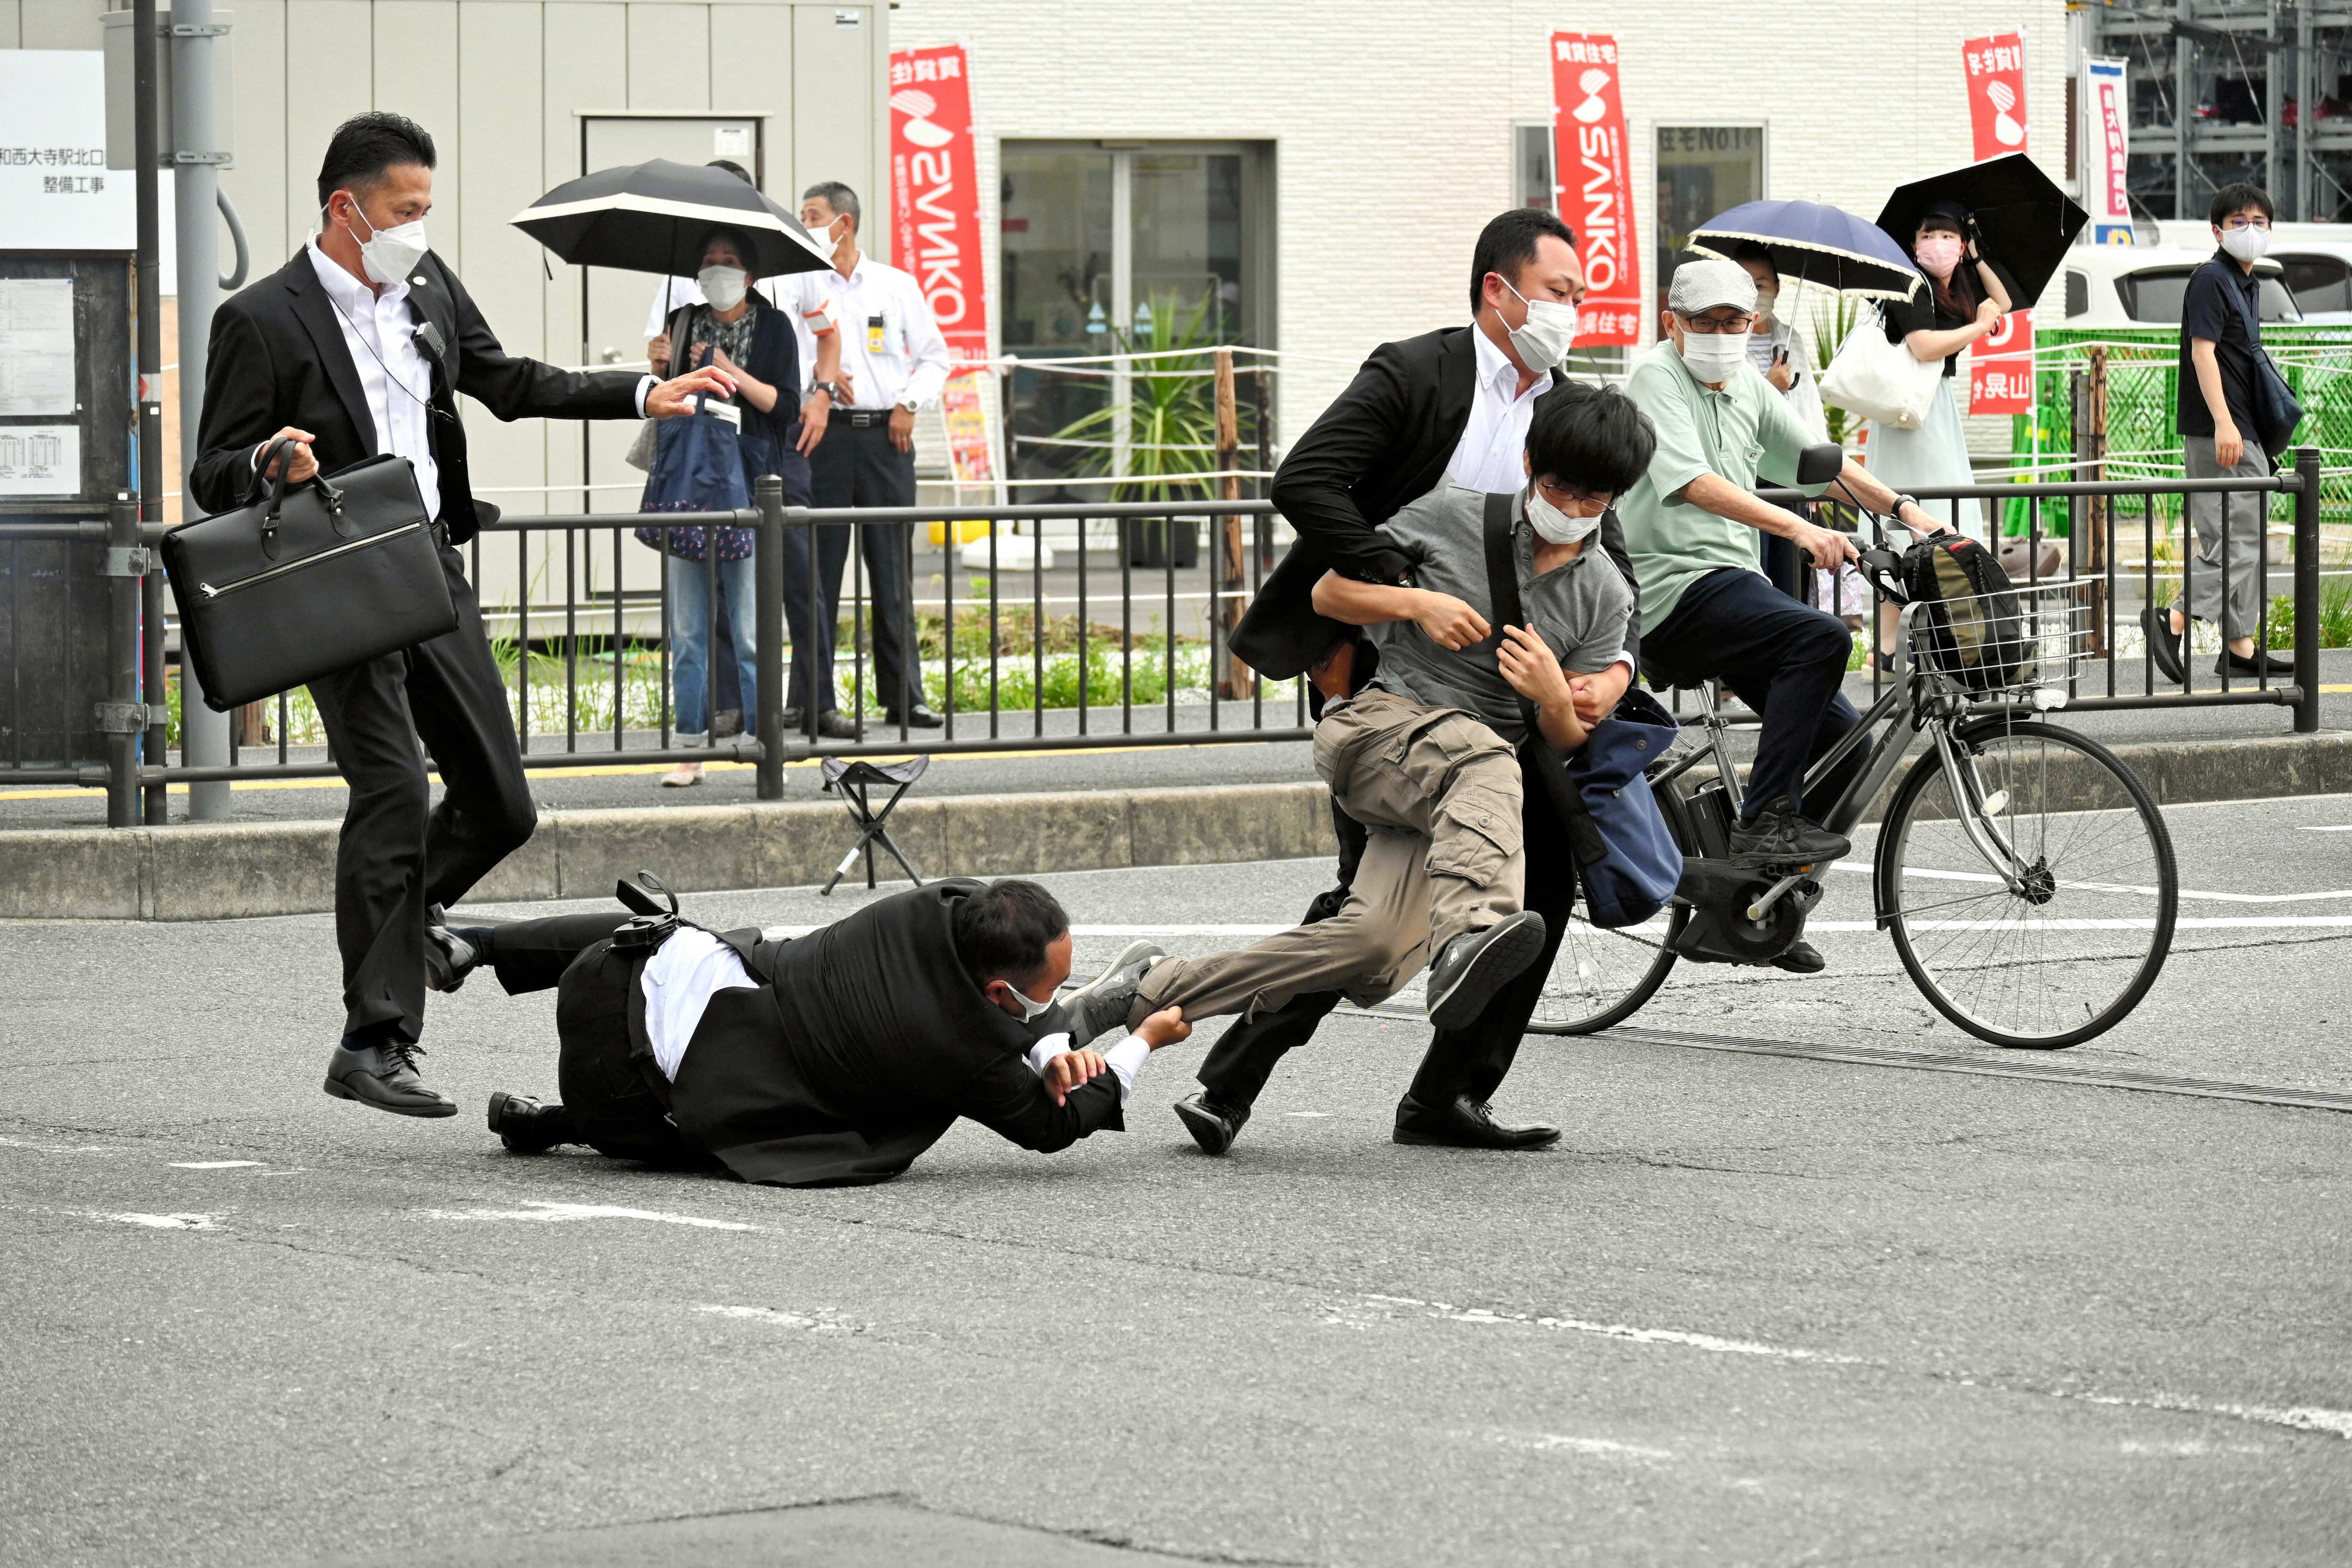 Ba giây định mệnh trong vụ cựu Thủ tướng Nhật Bản Abe bị ám sát - 2